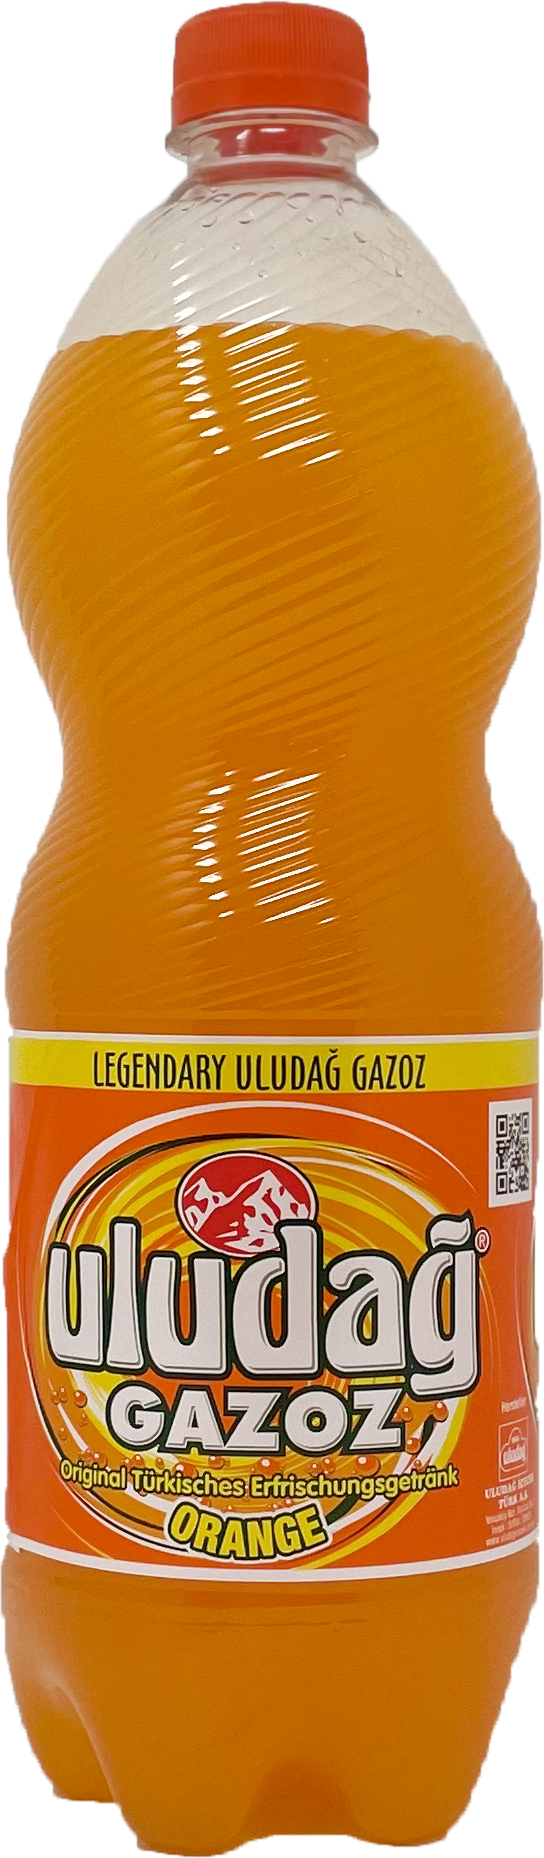 Uludag Gazoz Orange 1L